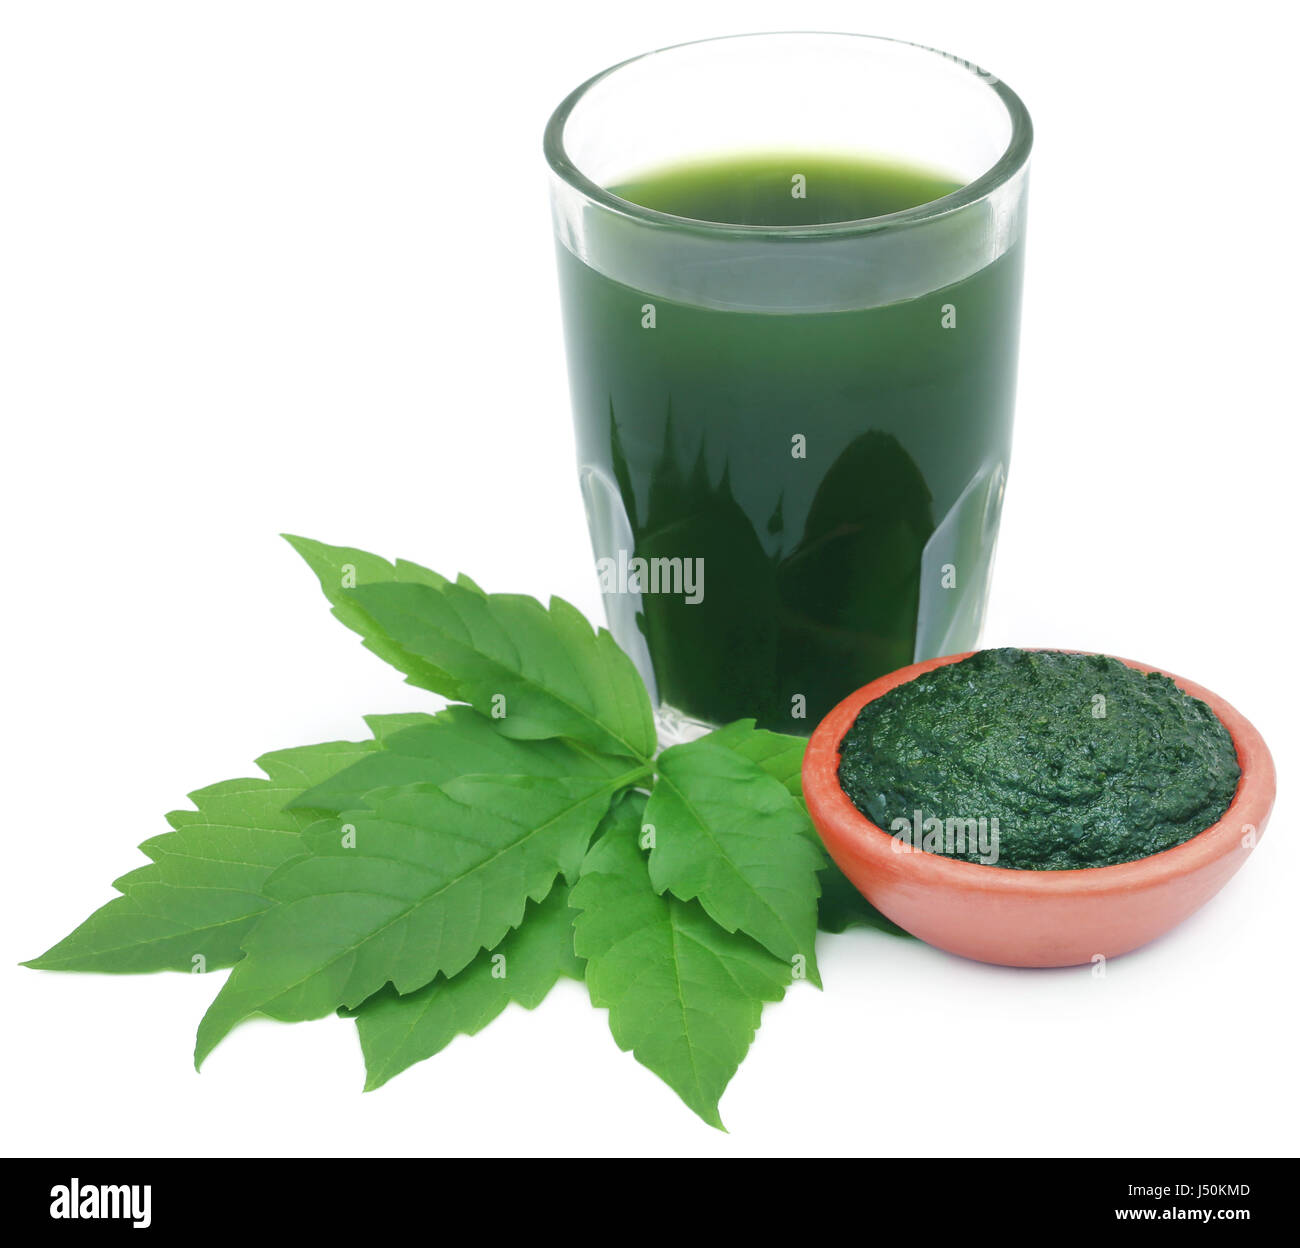 Mashed vitex Negundo or Medicinal Nishinda leaves with extract juice Stock Photo